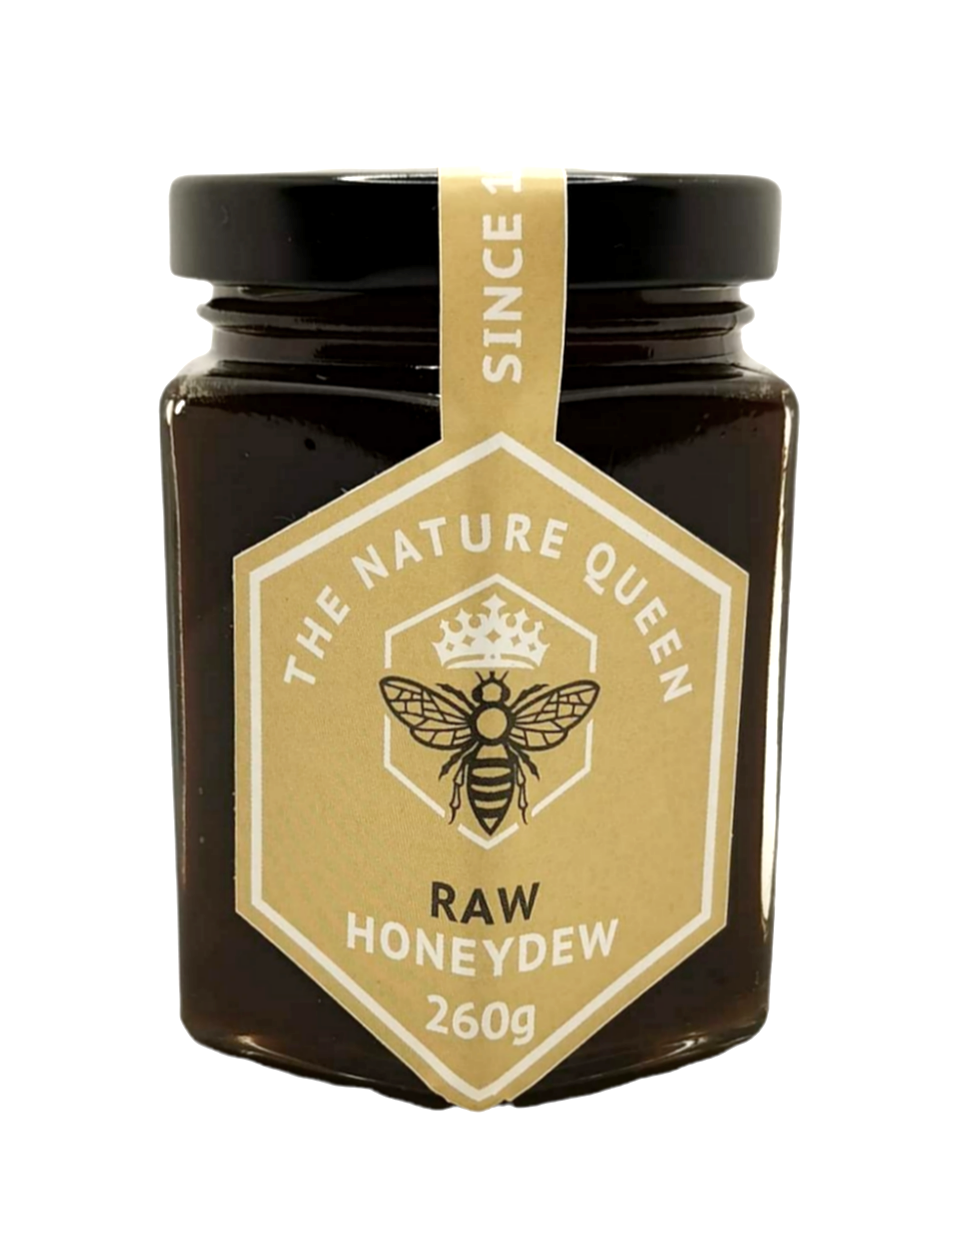 Organic honey uk